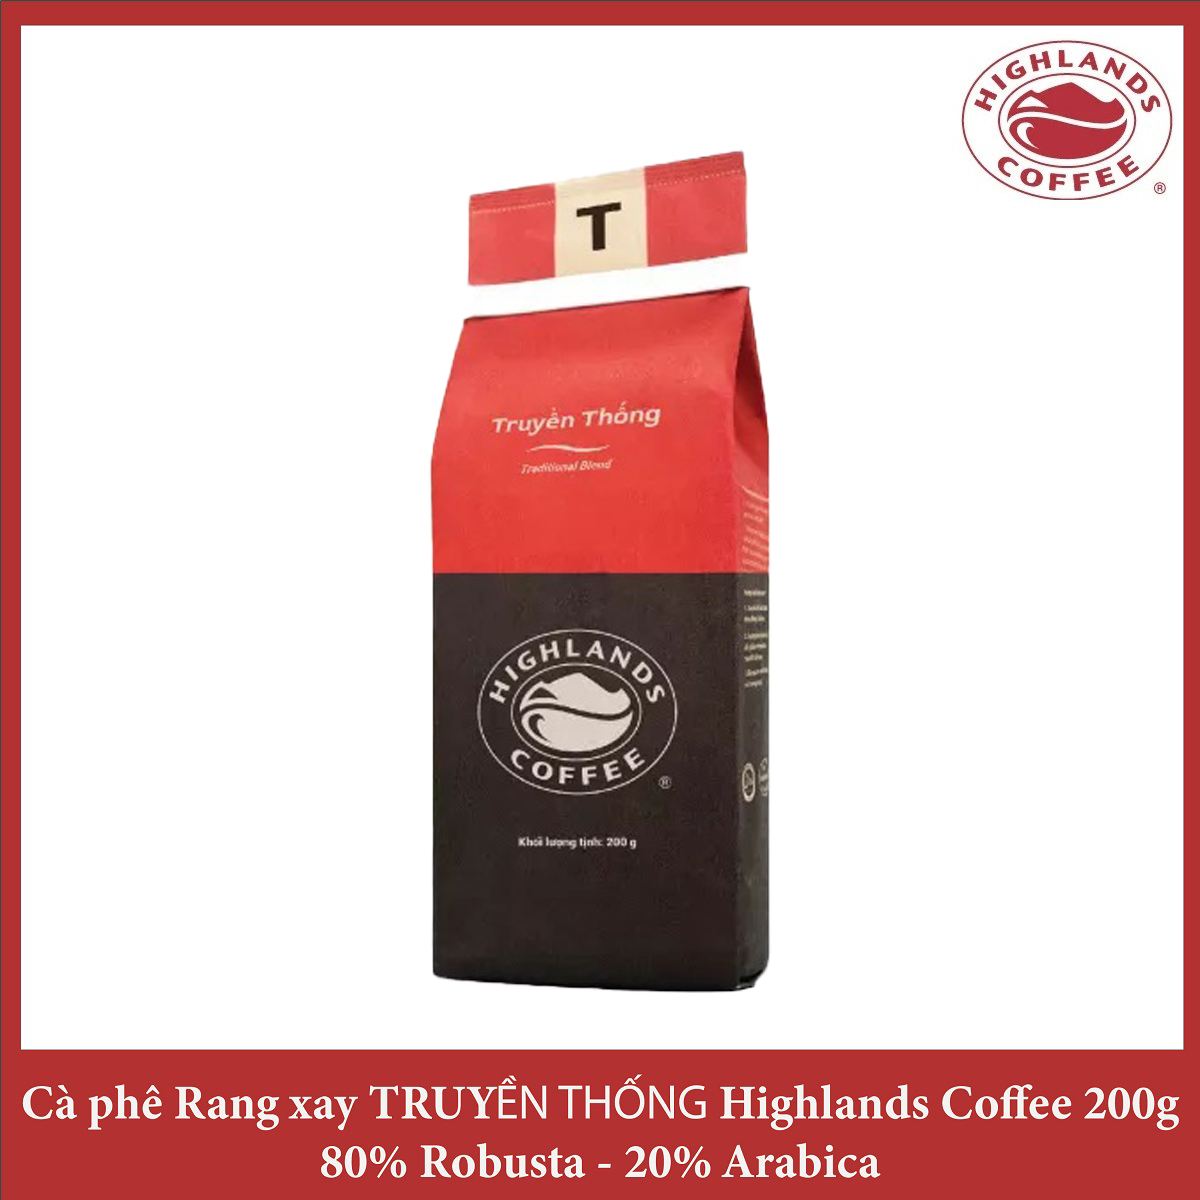 Traditional Blend Cà phê Rang xay Truyền thống Highlands Coffee 200g